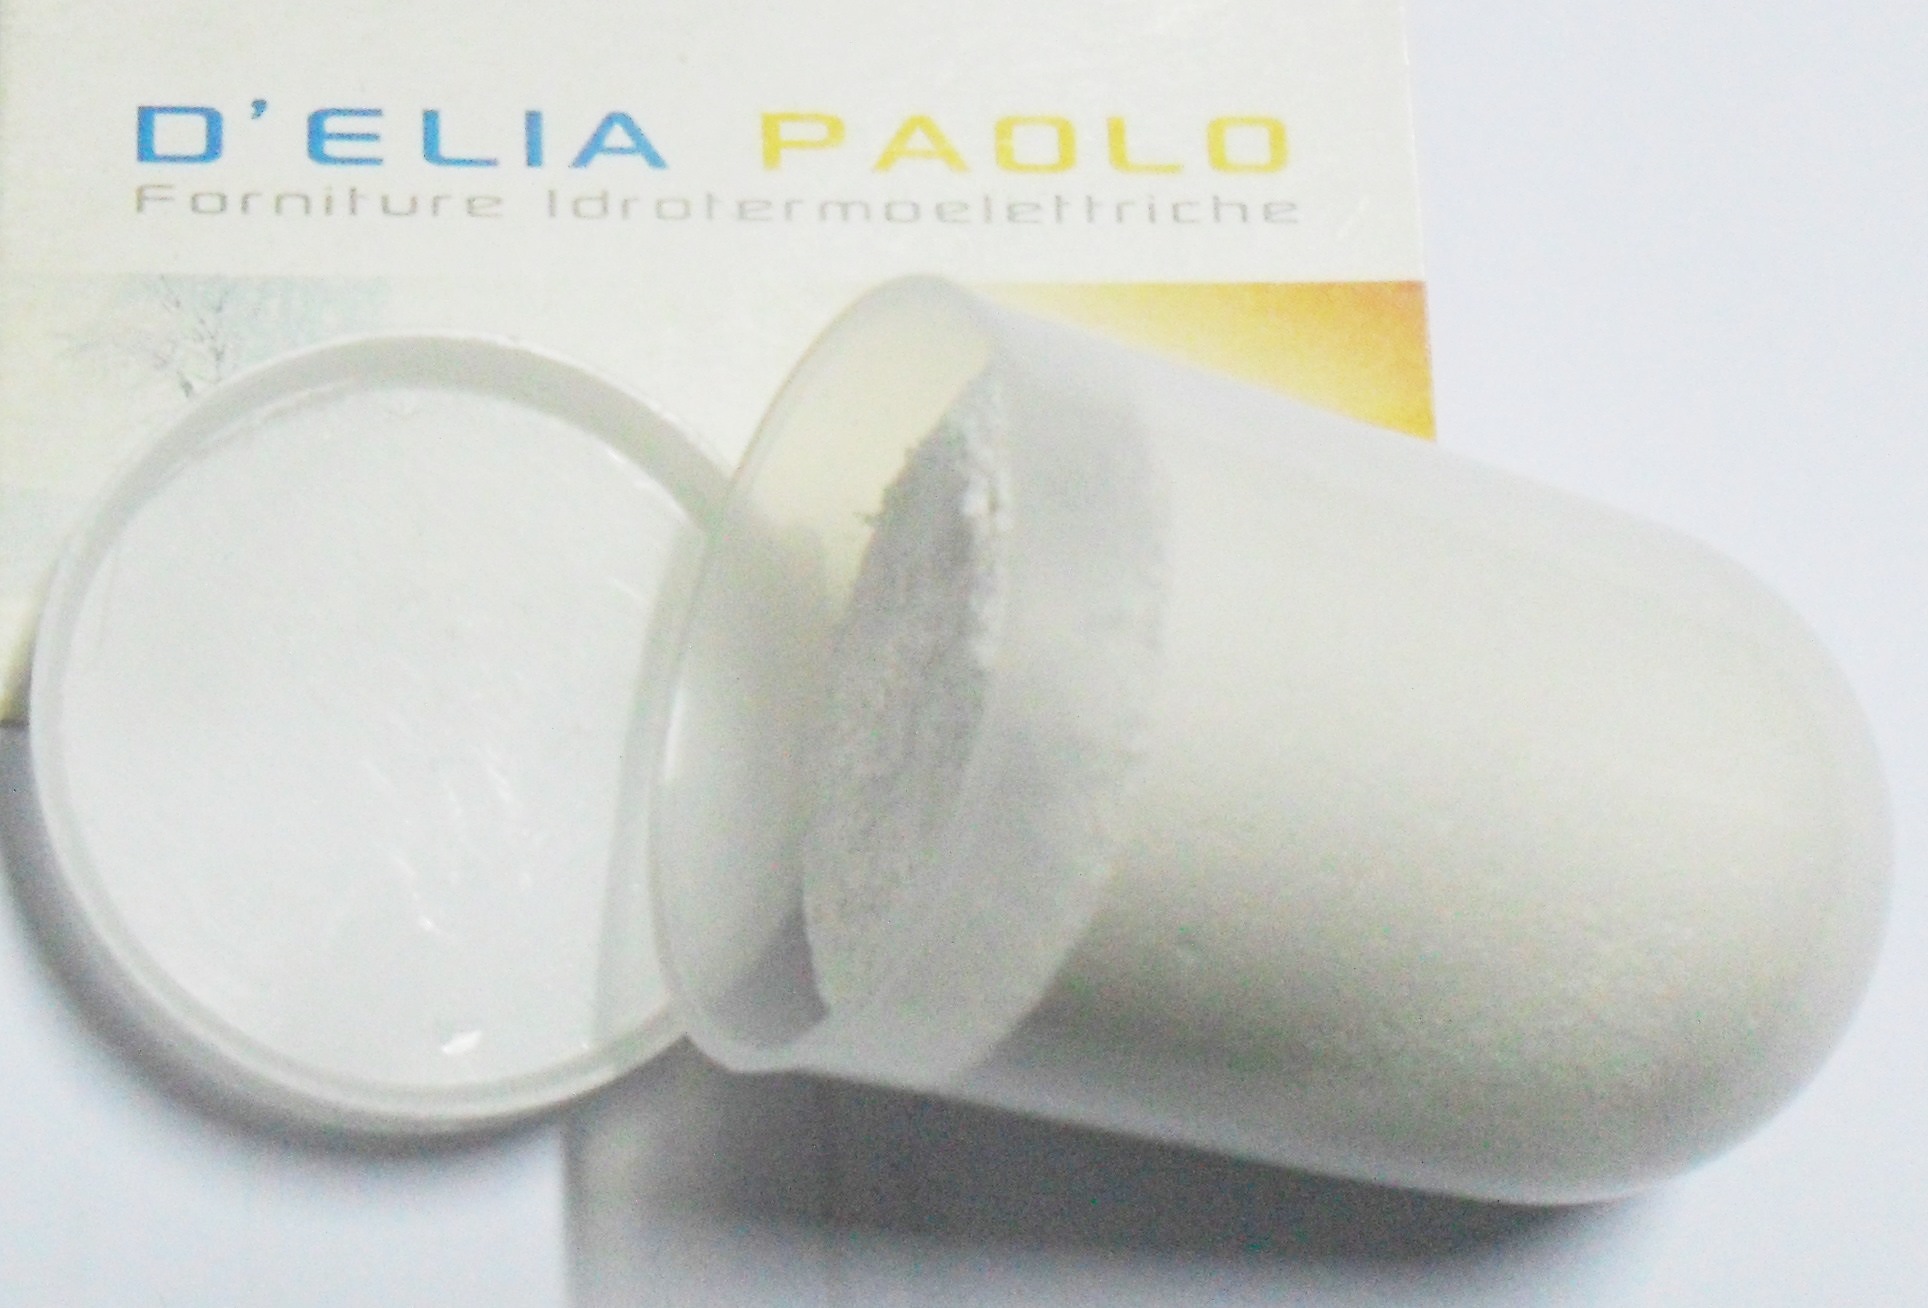 Atlas filtro dosatore proporzionale polifosfato in polvere salva caldaie 1/2"